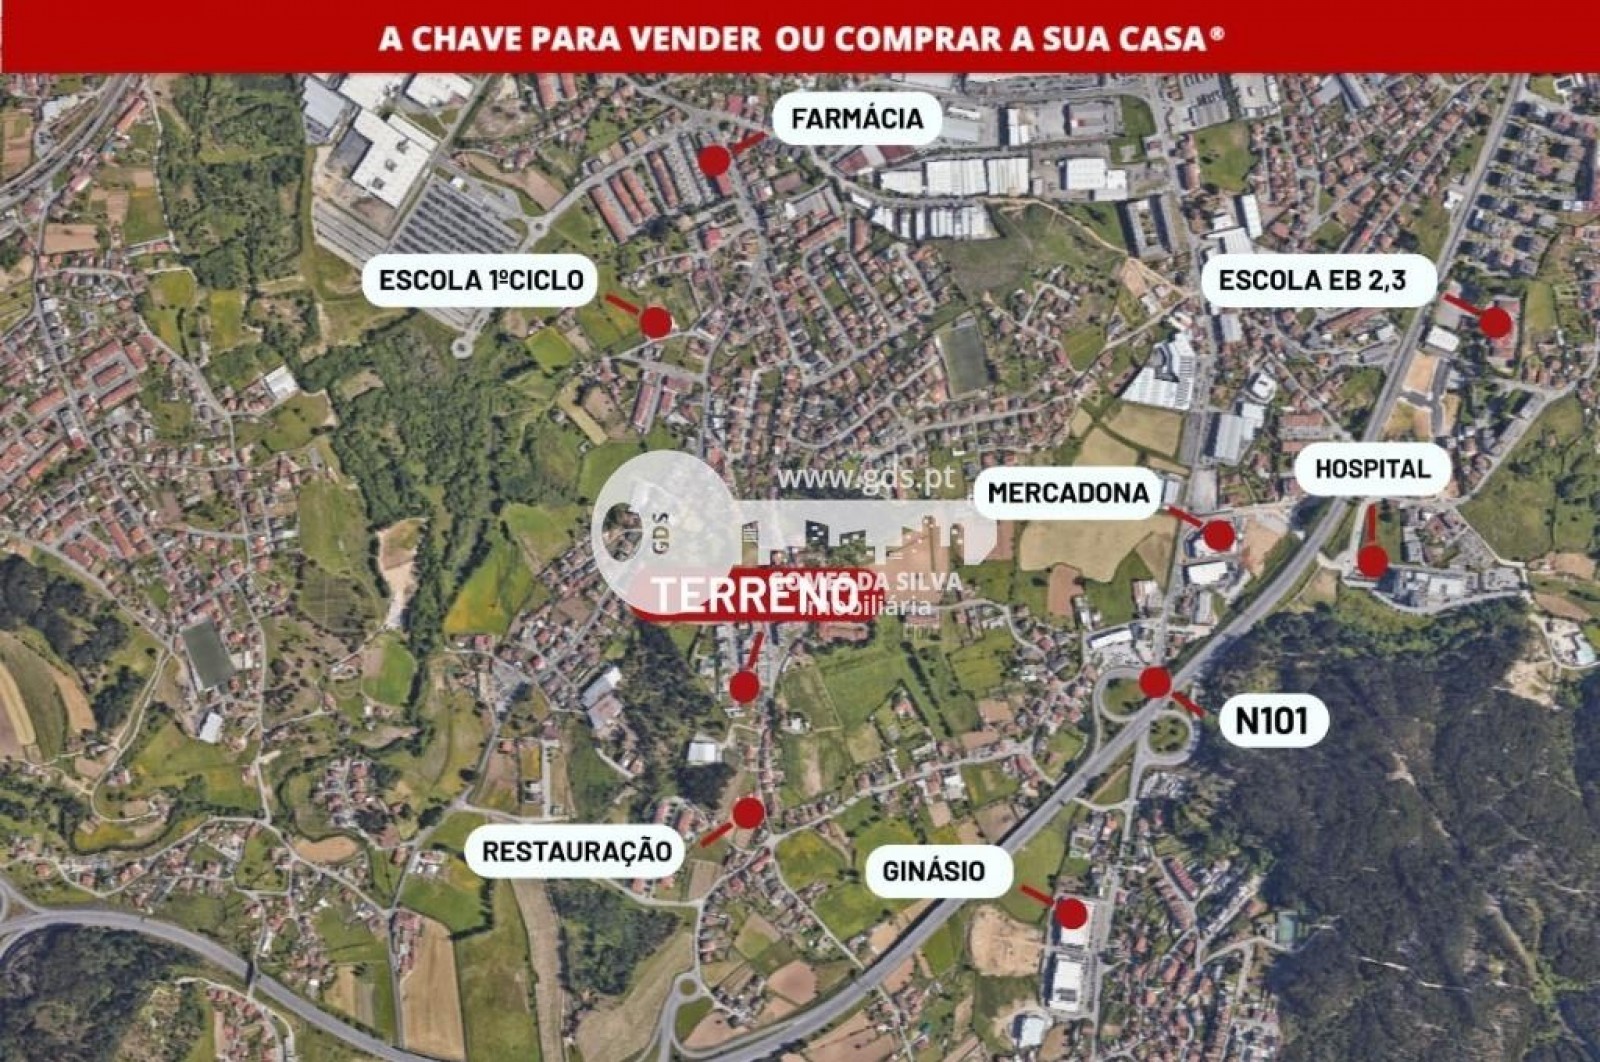 Terreno para Venda em Lomar e Arcos, Braga, Braga - Imagem 9